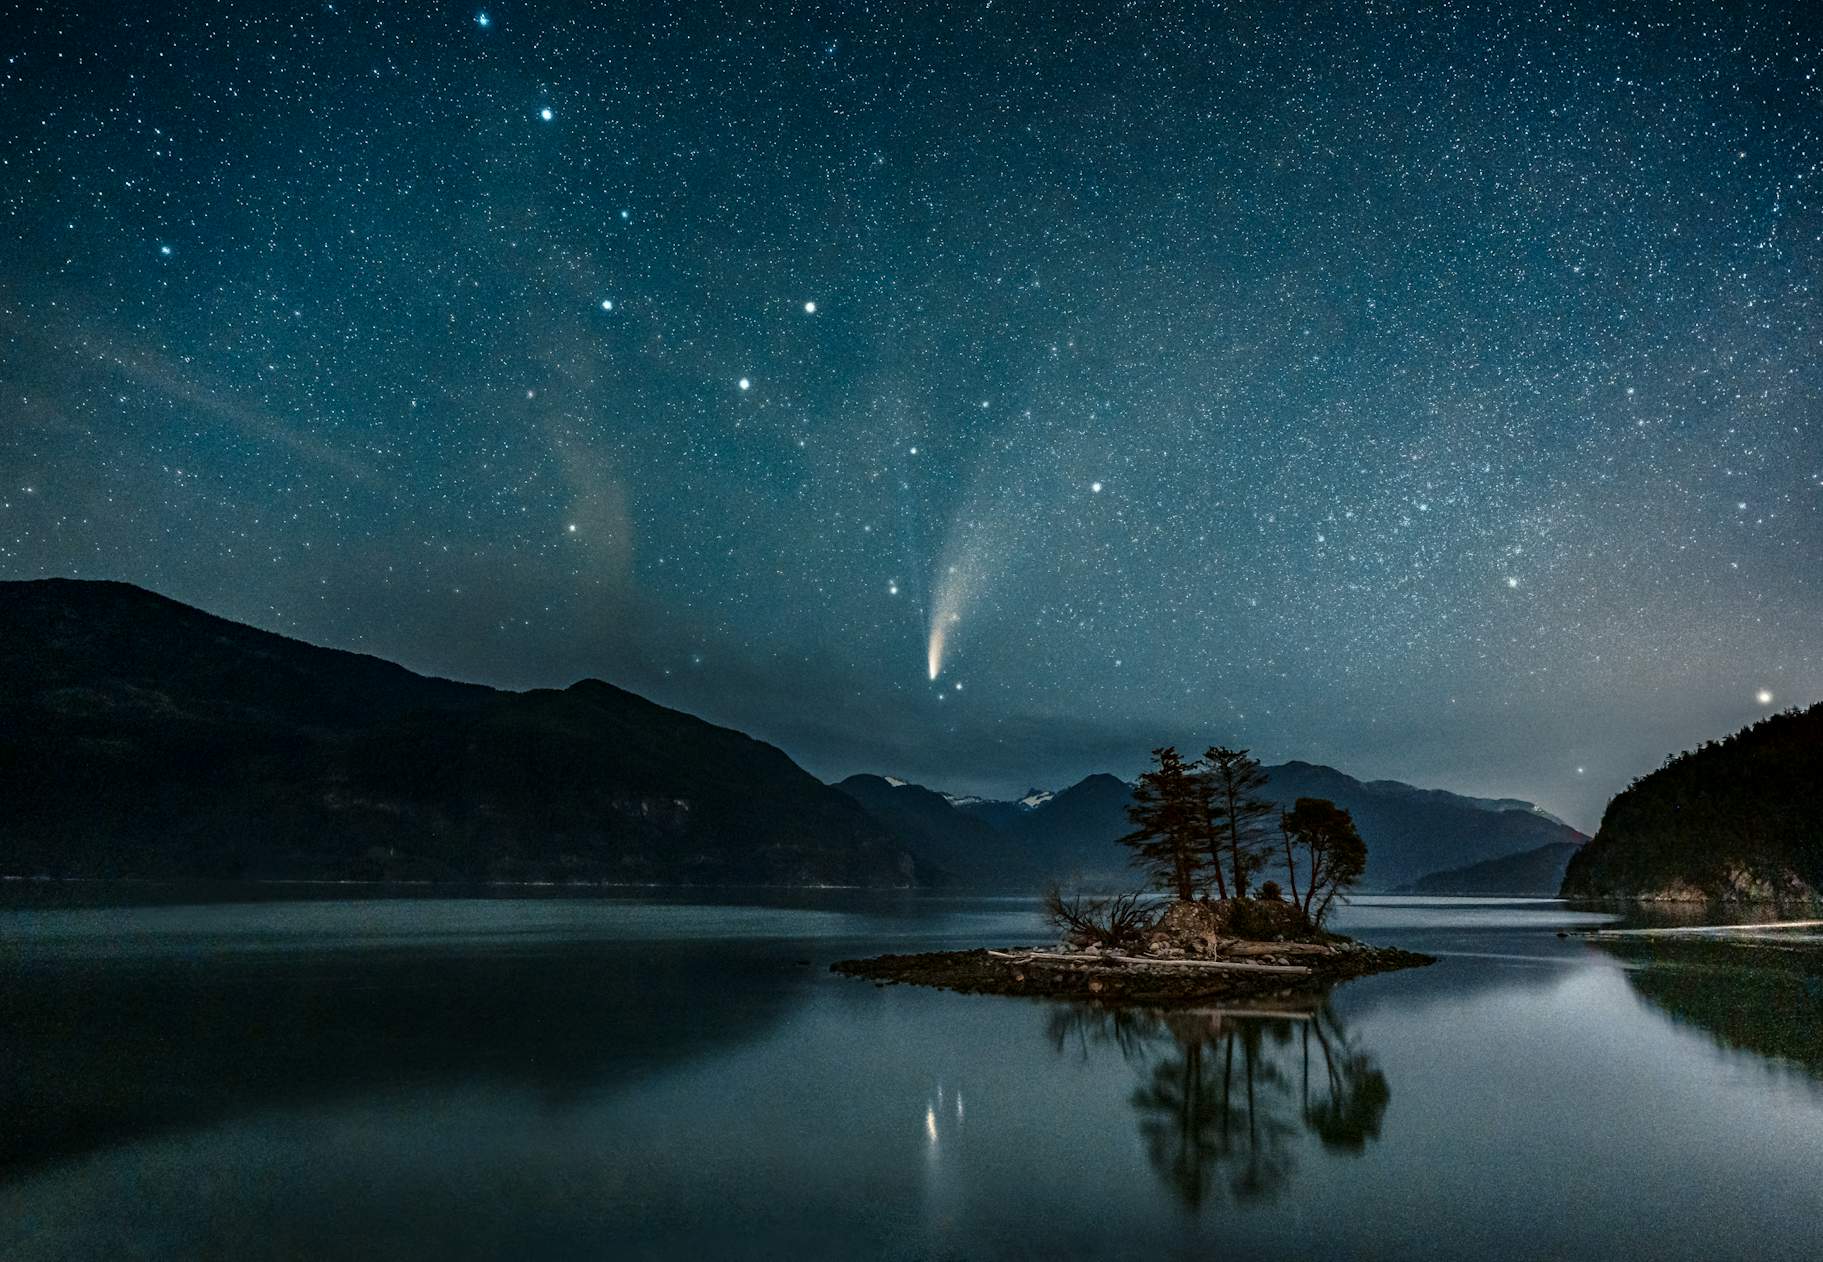 Slik deg optimalt til fotografere kometen | Digital-foto.no